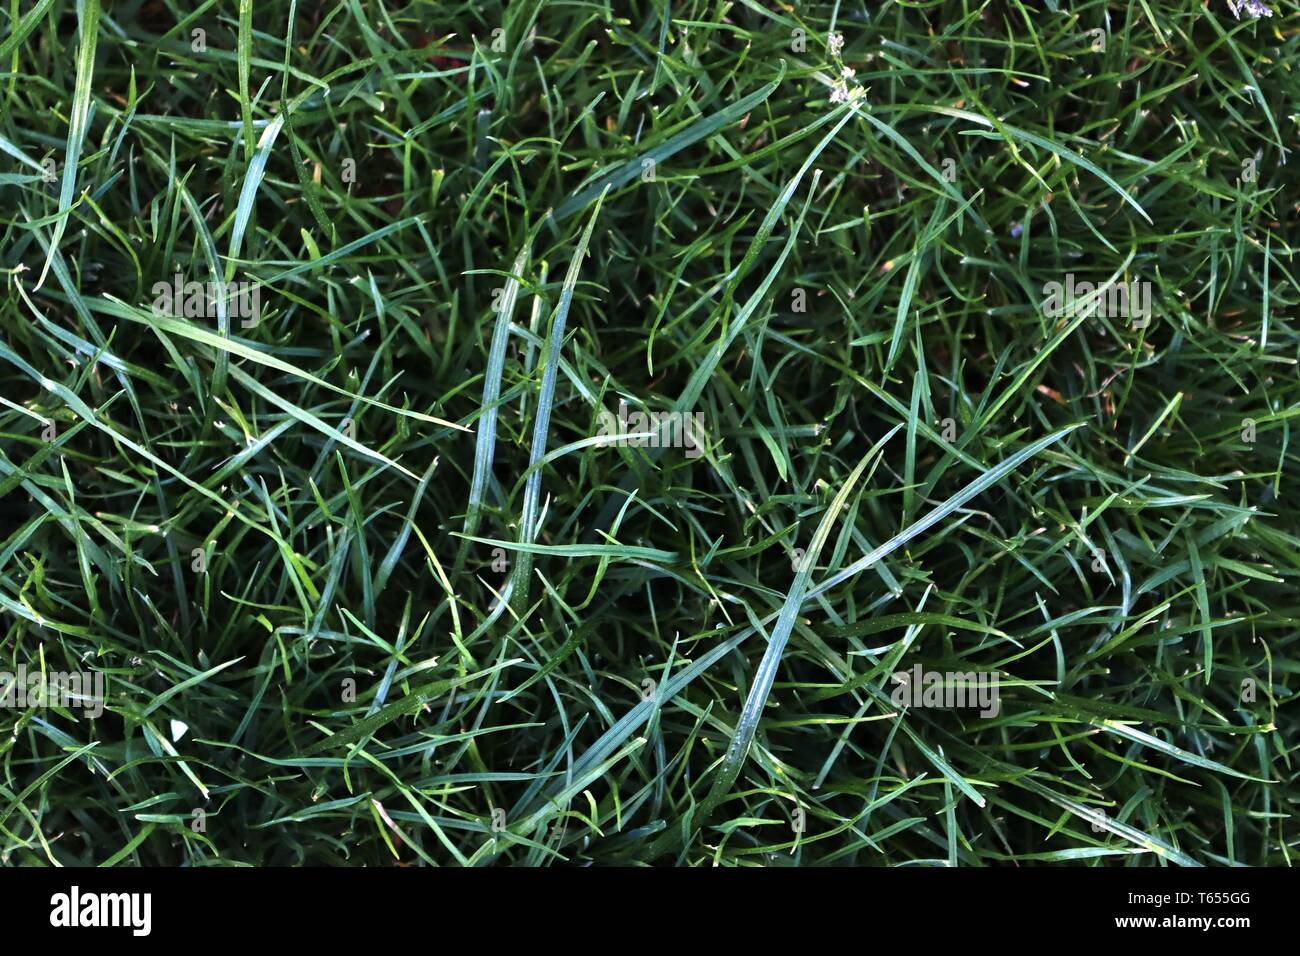 Schließen Sie die Oberfläche der grünen Gras auf einer Wiese an einem sonnigen Sommertag Stockfoto